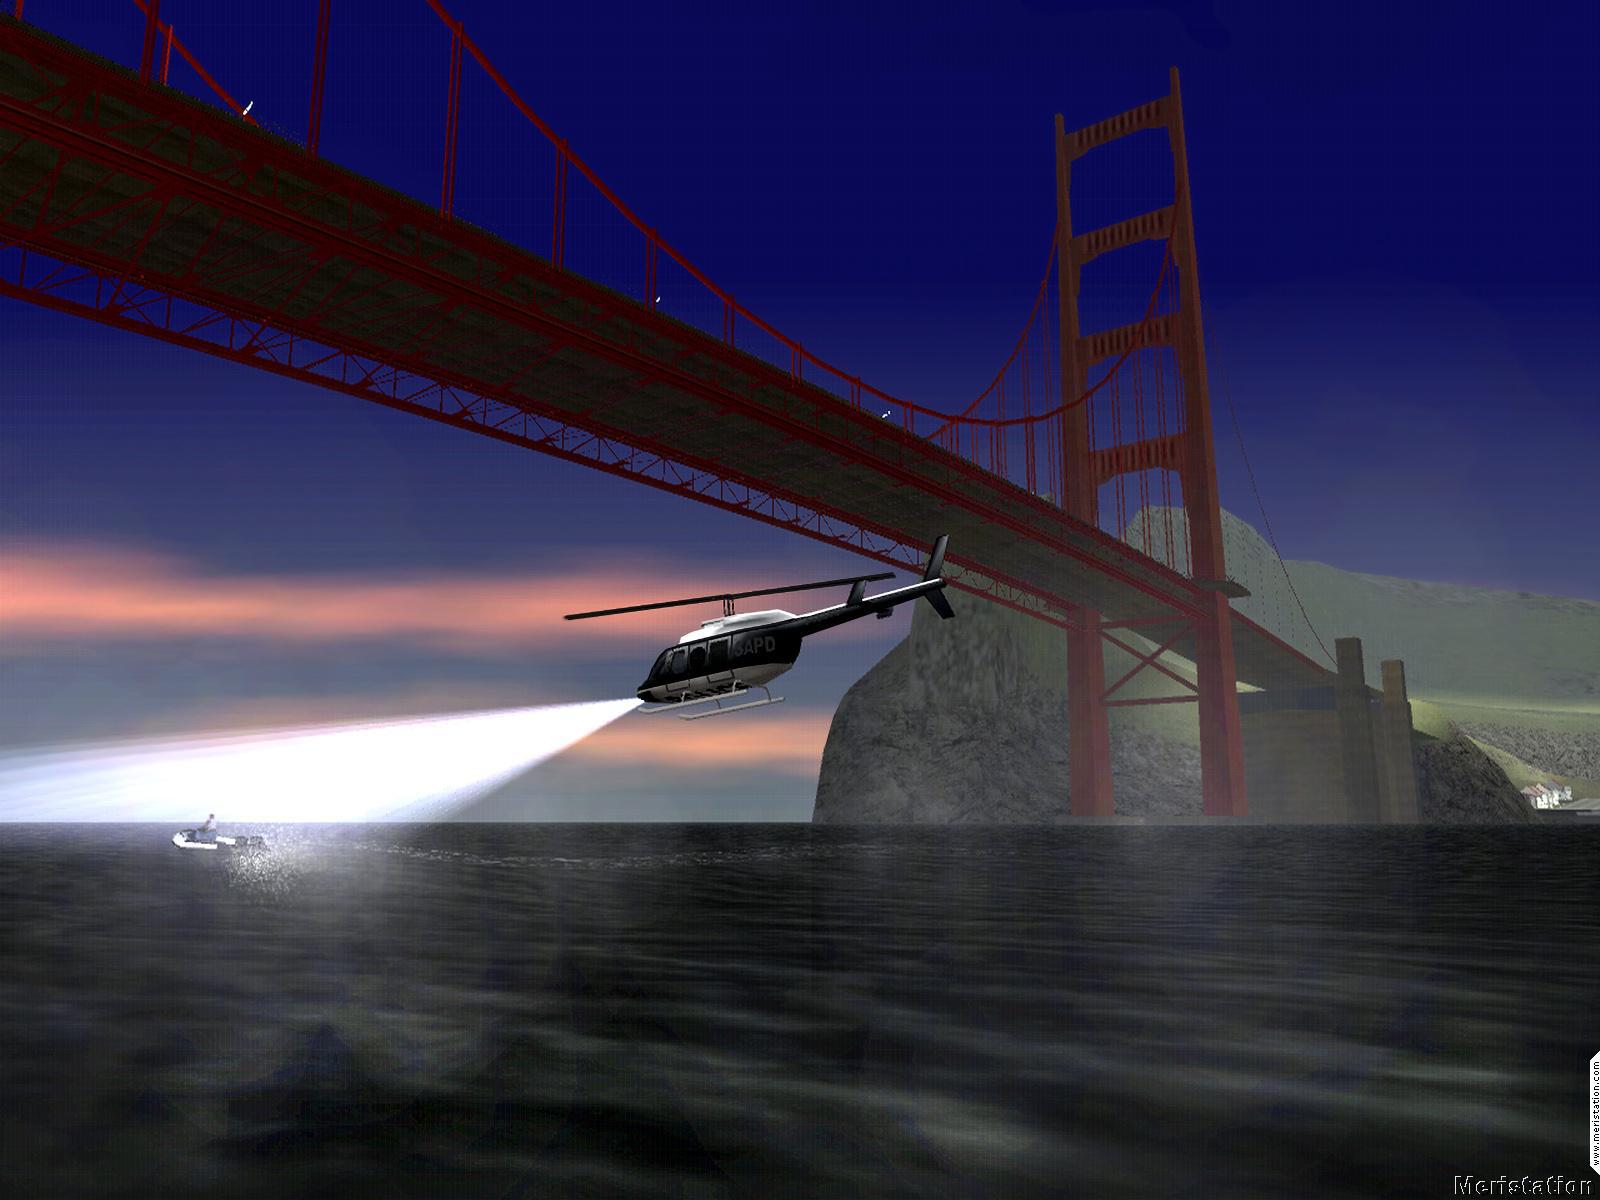 Установка сан андреас. GTA San Andreas на ПК 2005. Игра под водой на ПК. Tf2 GTA San Andreas.